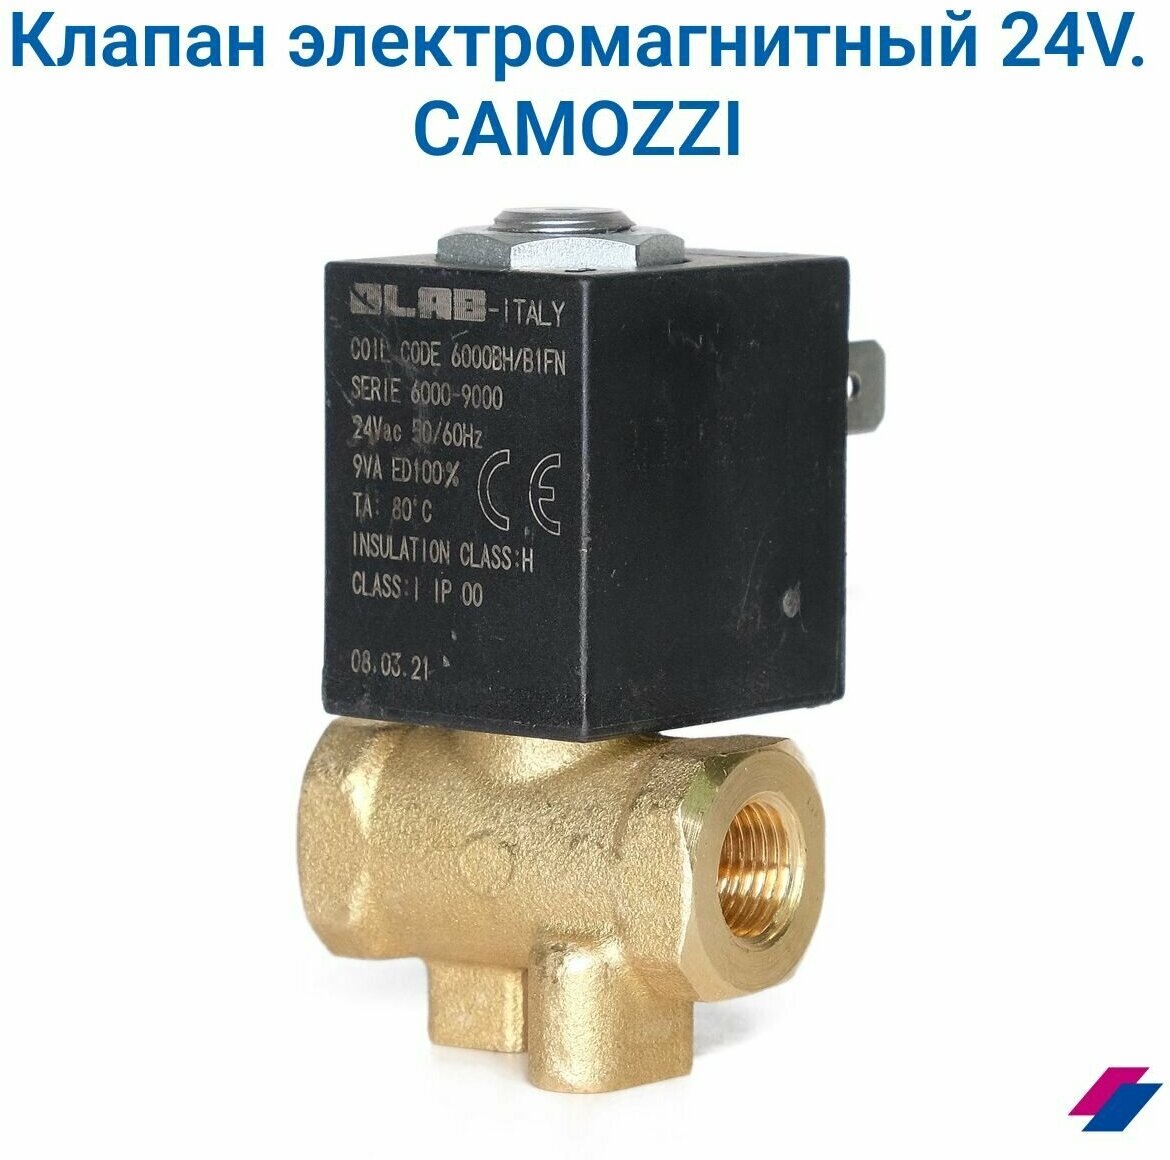 Клапан электромагнитный 24V AC 5946/P CAMOZZI